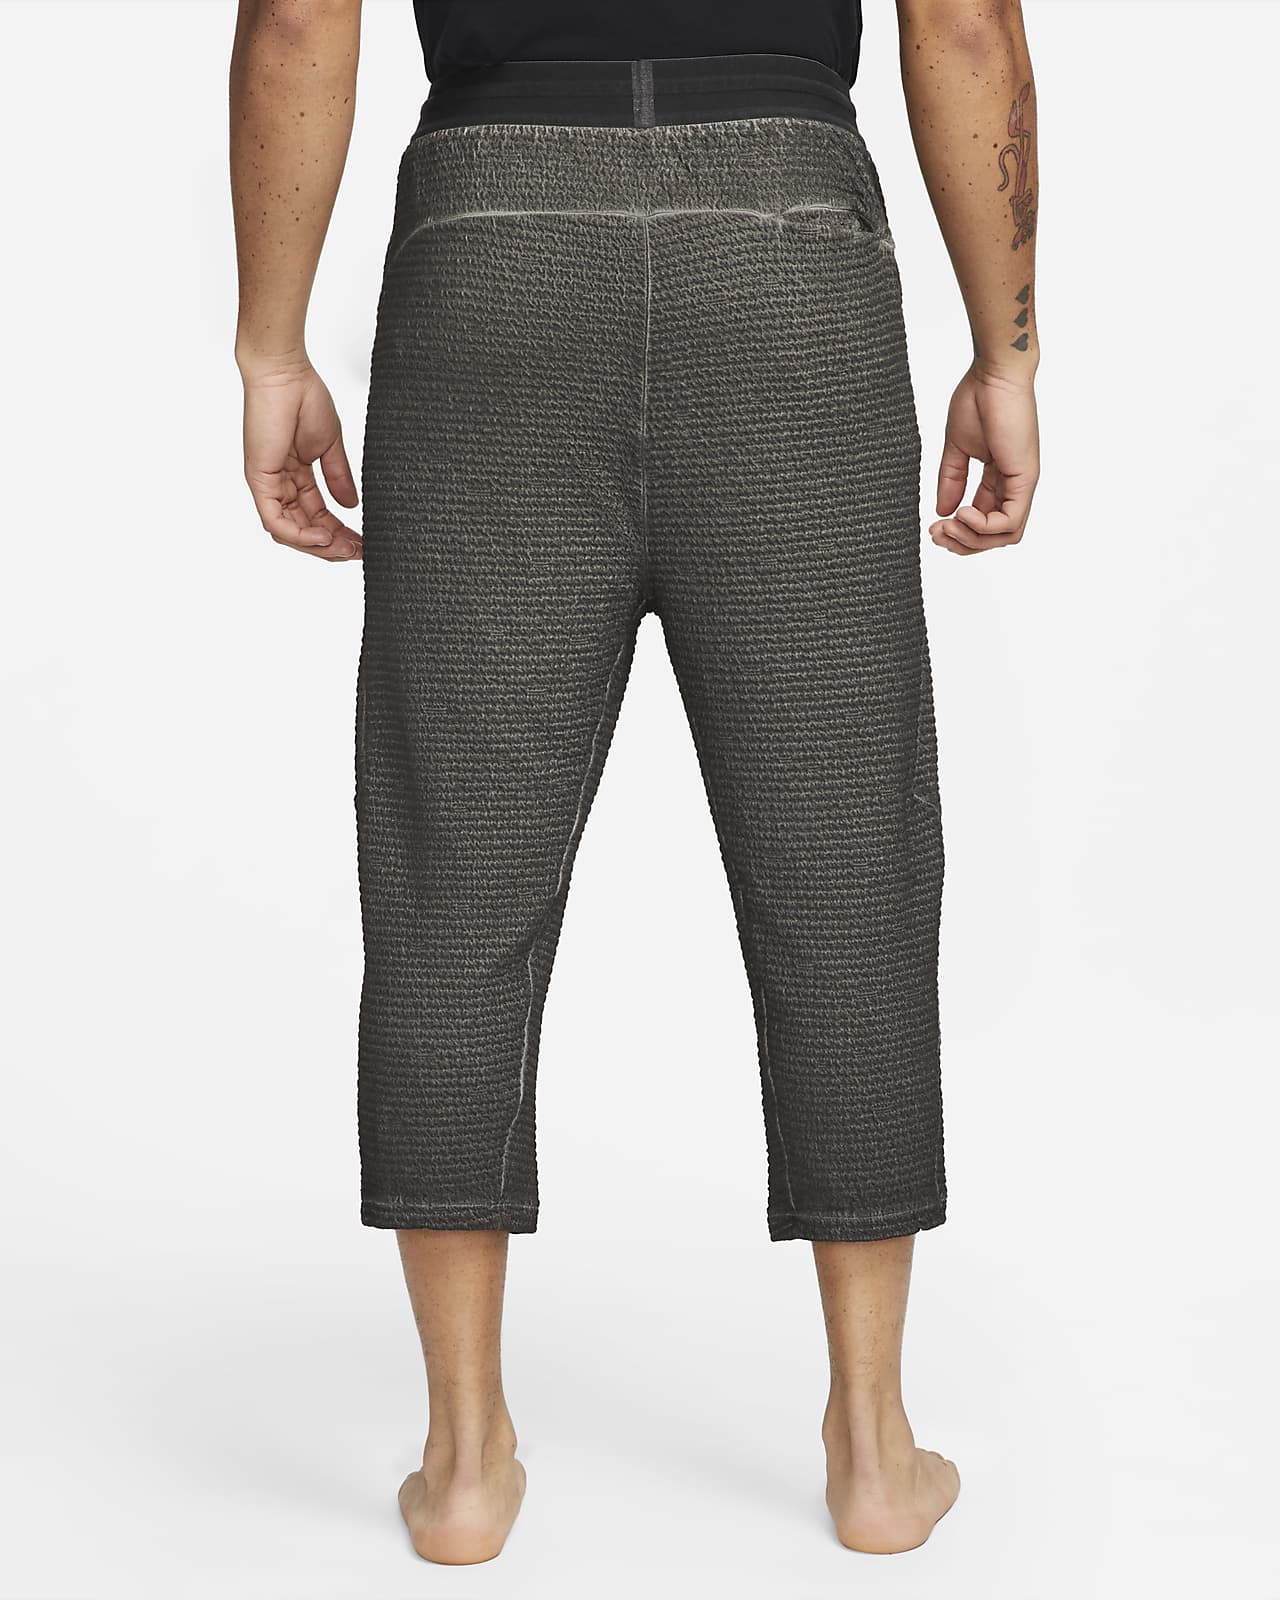 Nike Yoga Pants - Men's